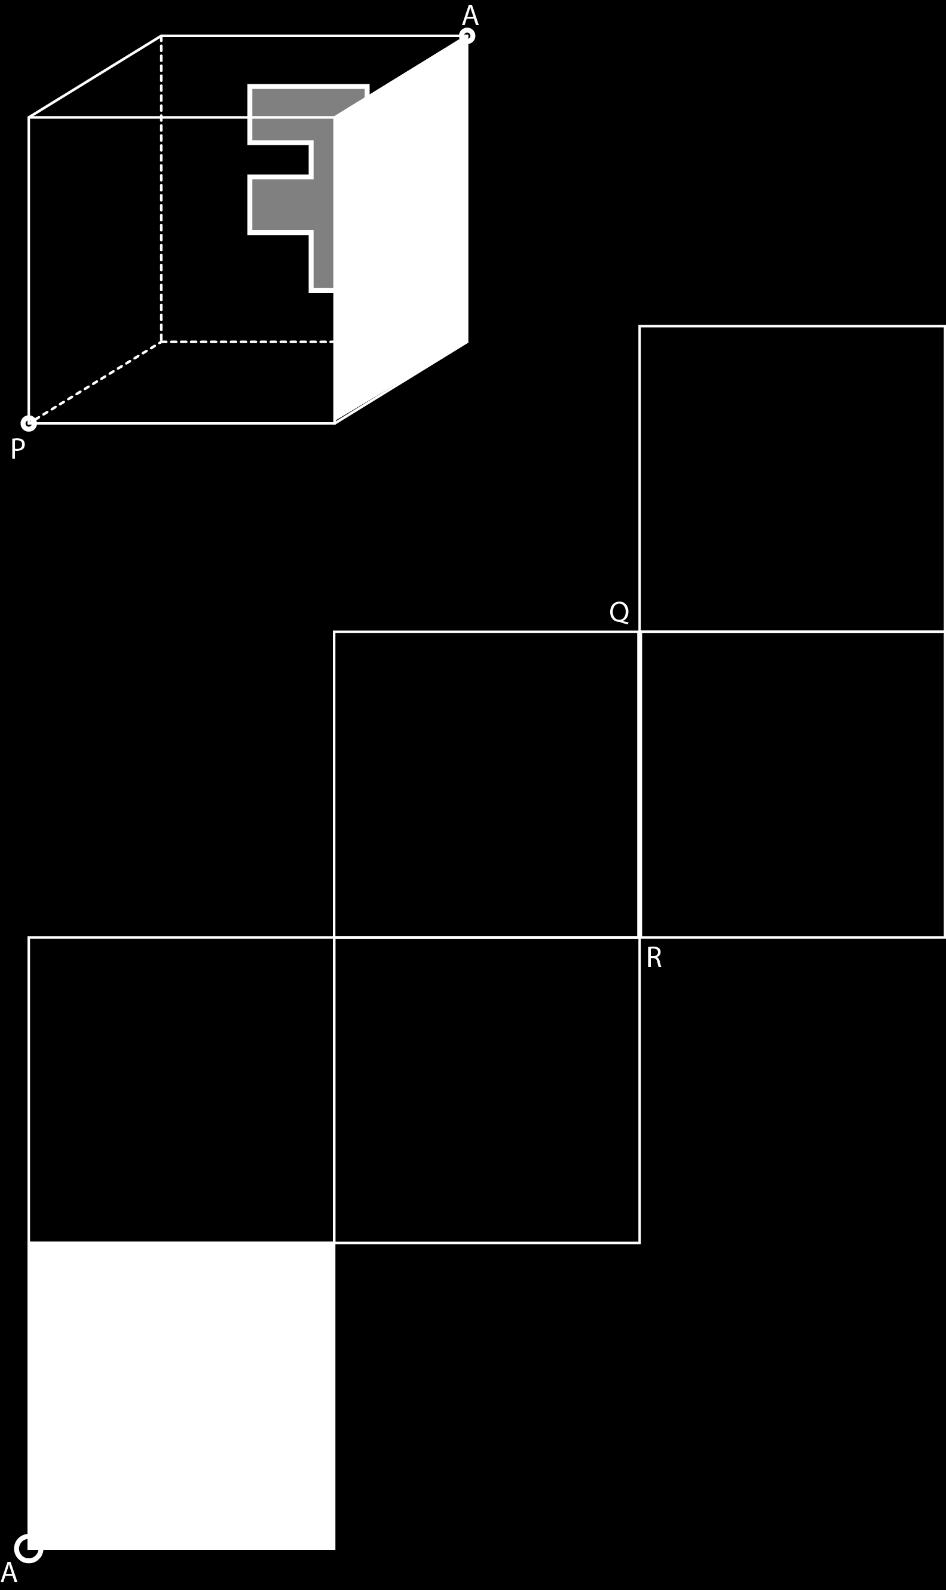 11/15 Aufgabe 11 3 P. Der abgebildete Würfel wird so auf das Netz gestellt, dass die graue Fläche und der Punkt A sich decken. Anschliessend wird der Würfel zum abgebildeten Netz aufgefaltet.